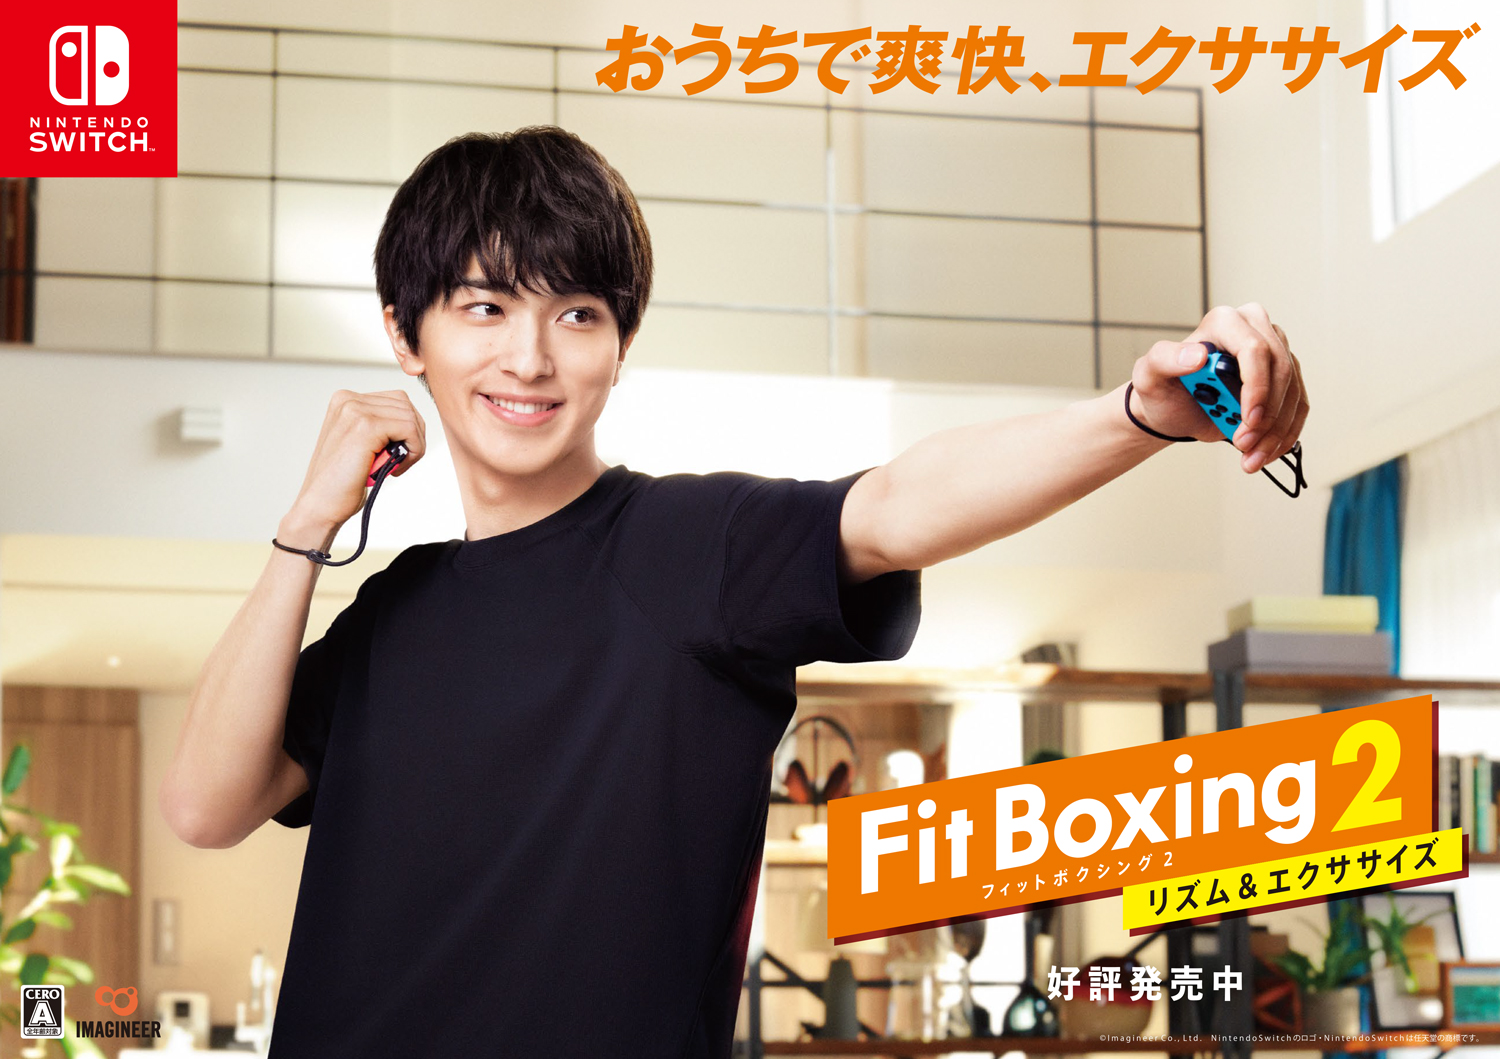 Nintendo Switch ソフト Fit Boxing 2 リズム エクササイズ 横浜流星さんを起用した Tvcm 放映のお知らせ イマジニアのプレスリリース